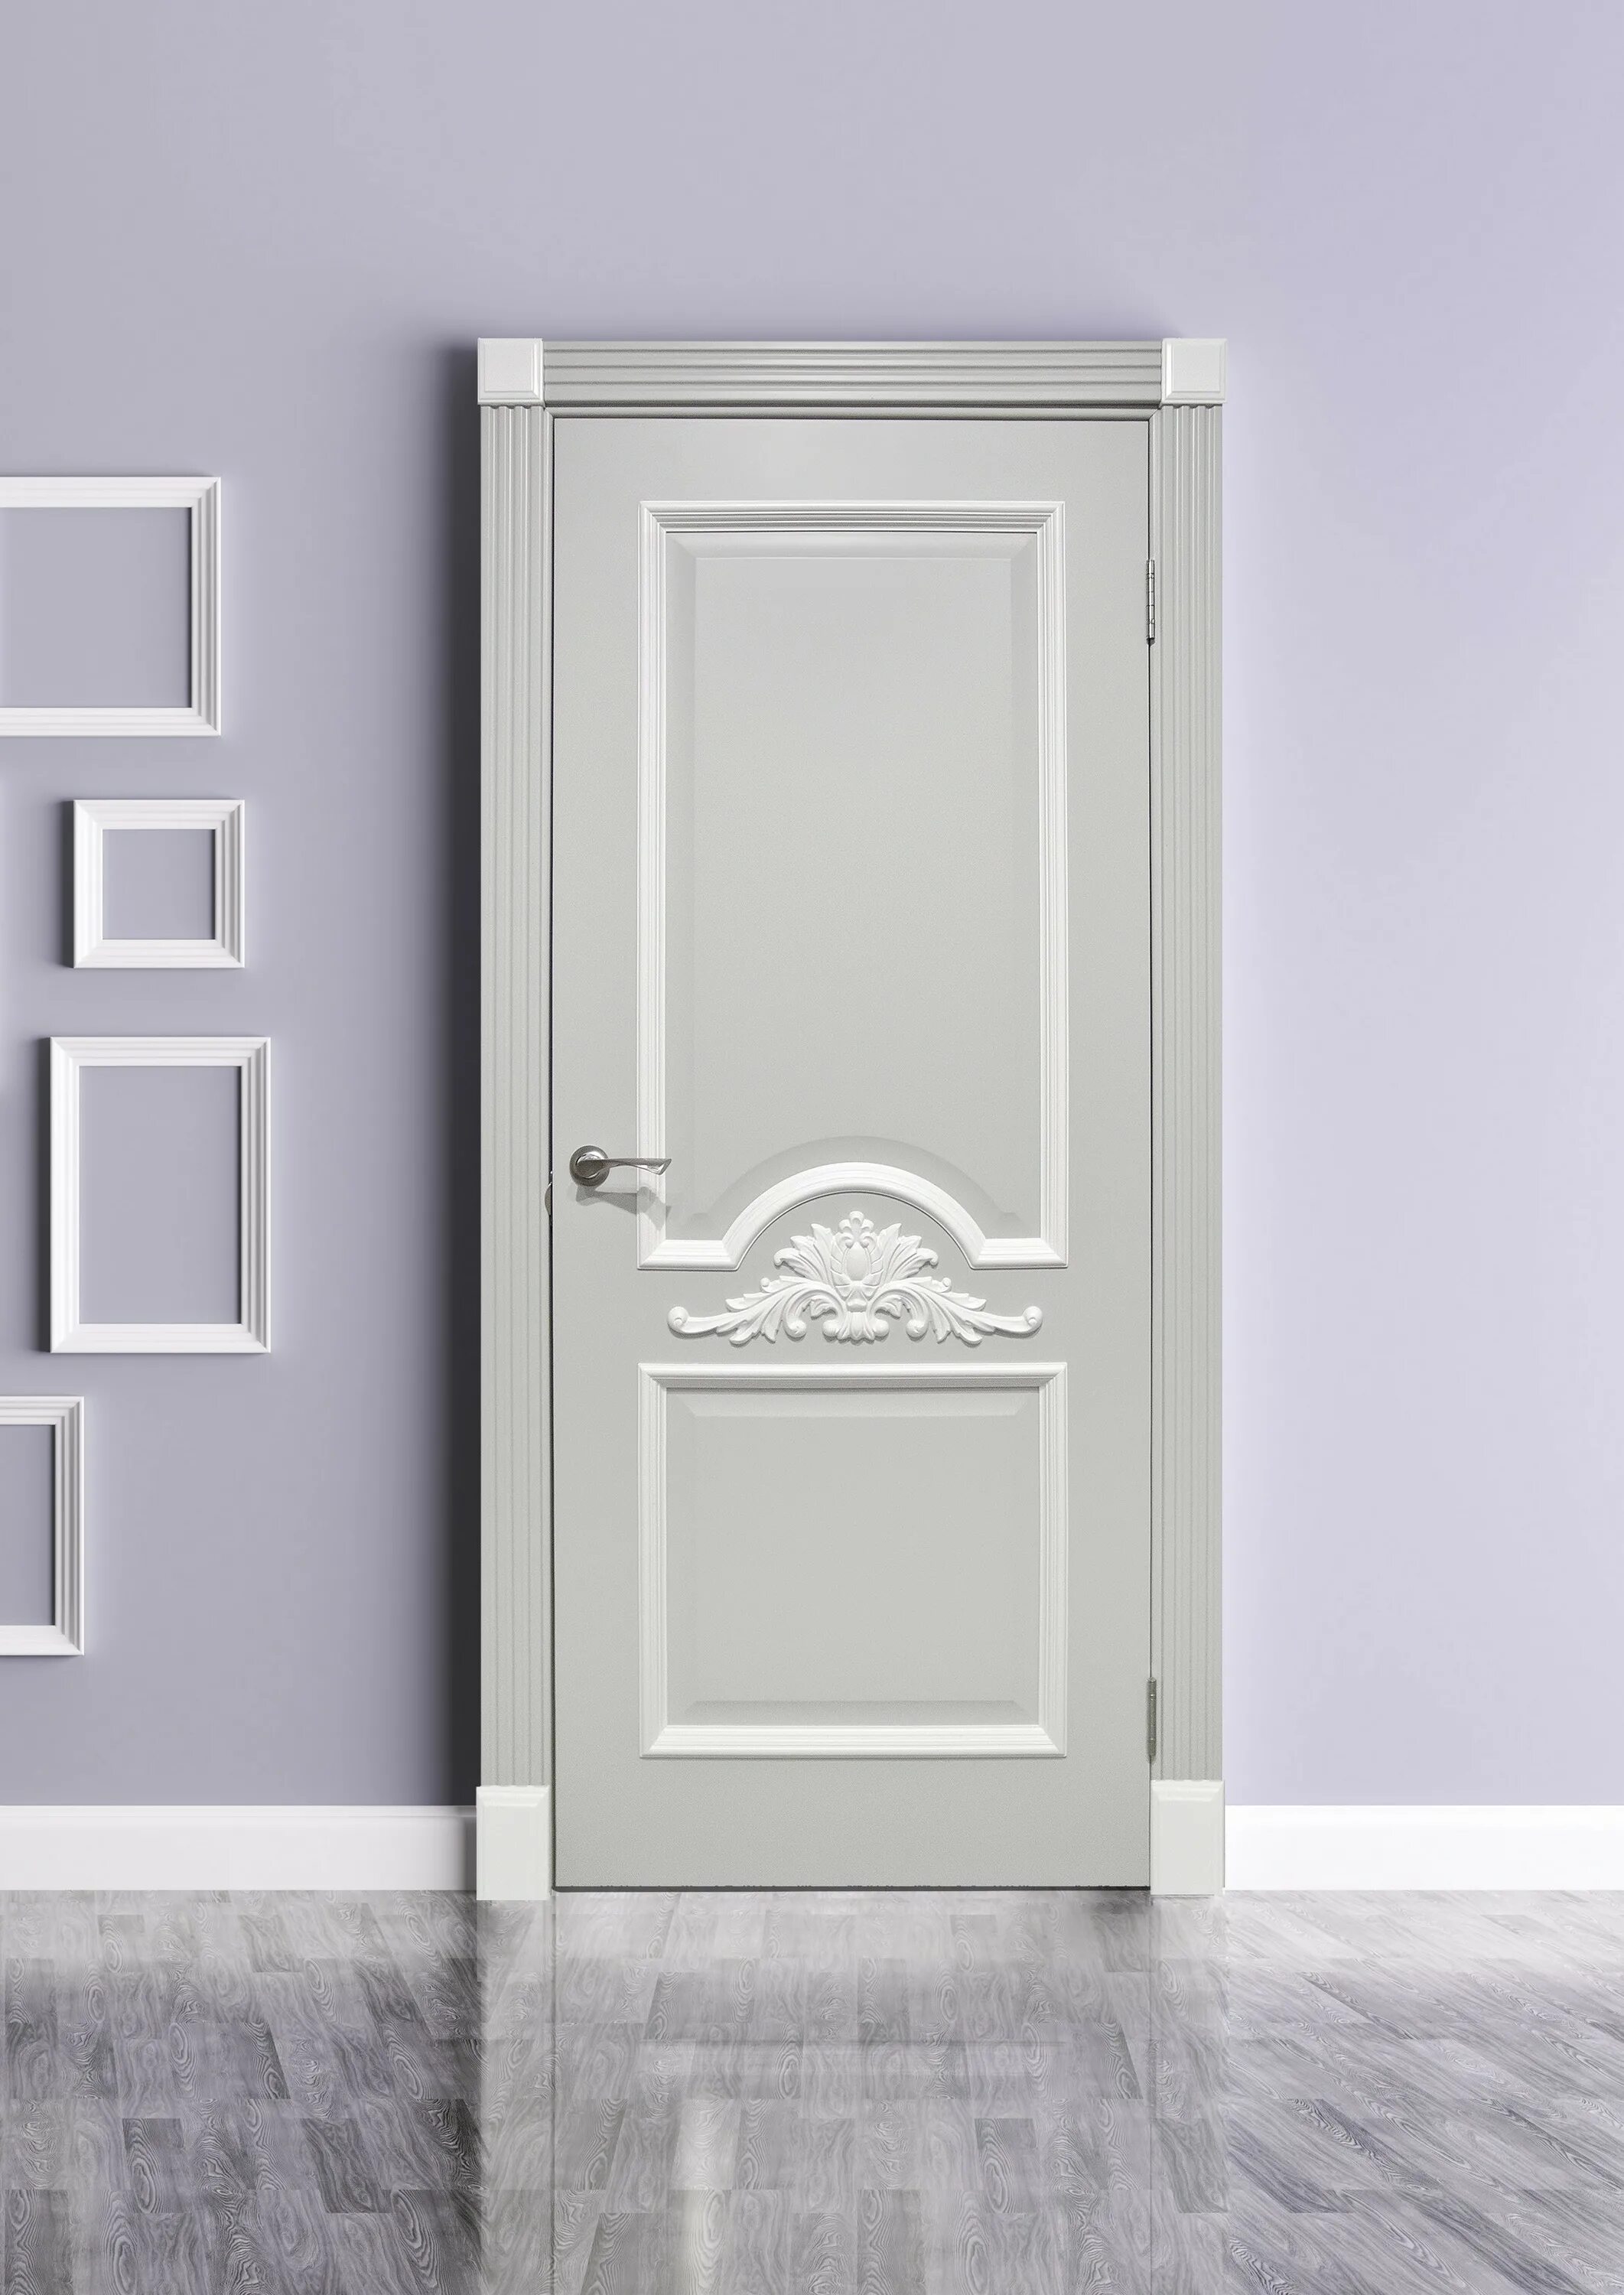 Купить белые двери москве. Дверь Victoria Design porte. ДГ 24-14 филенчатые двери.